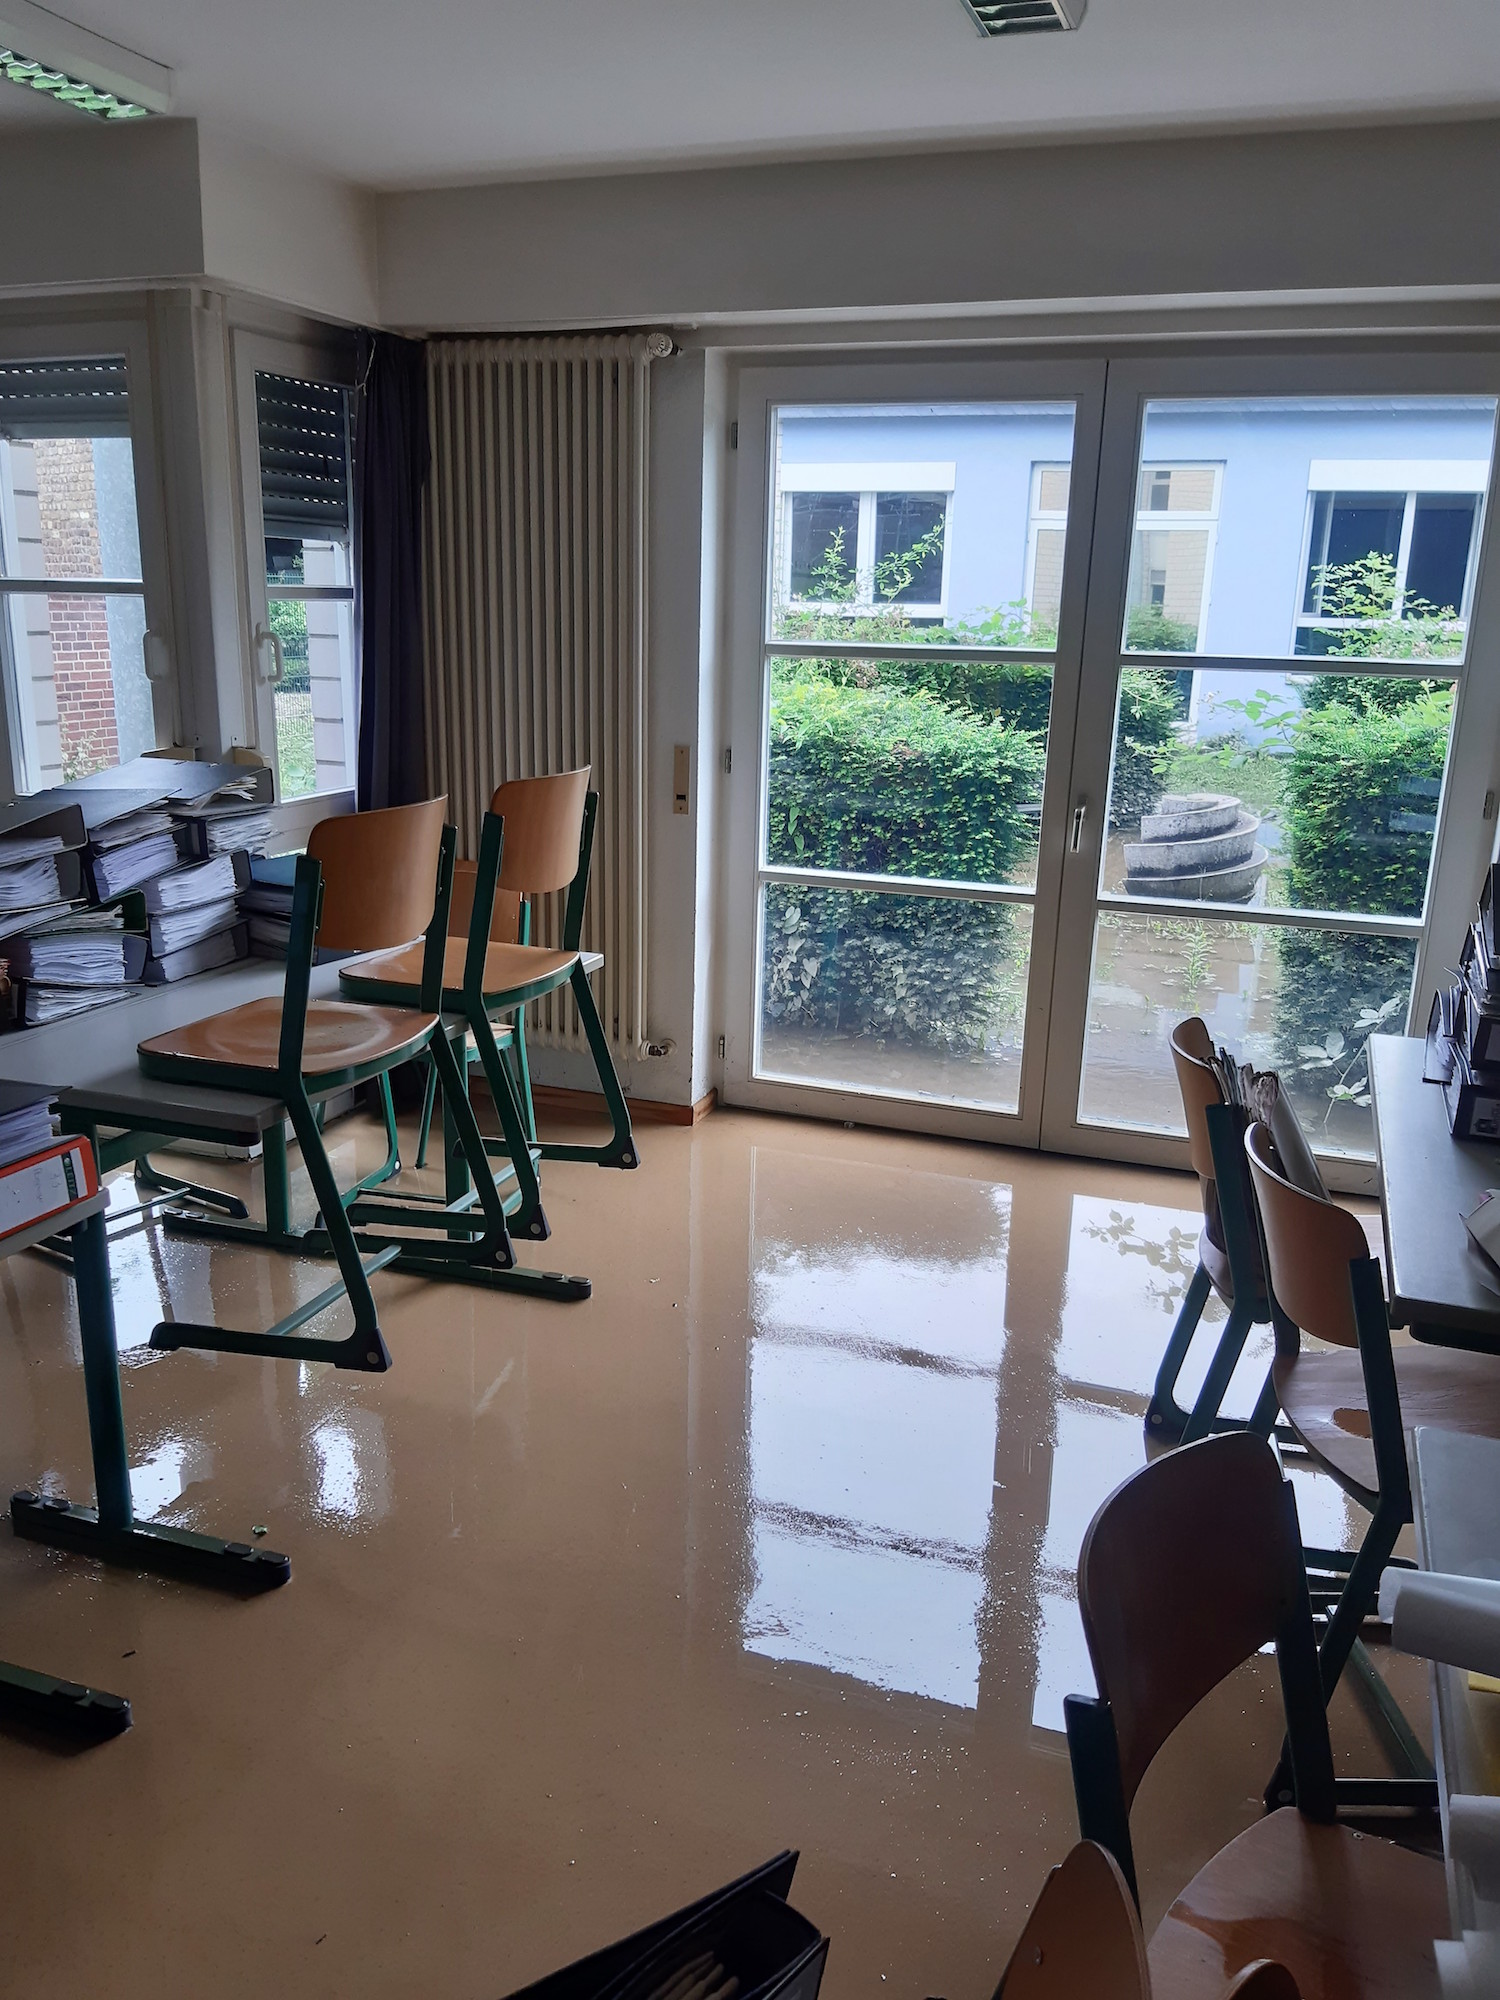 Die Keller überflutet, Klassenräume unter Wasser: So sah es kurz nach der Flut im Juli 2021 aus. (c) St. Ursula Geilenkirchen